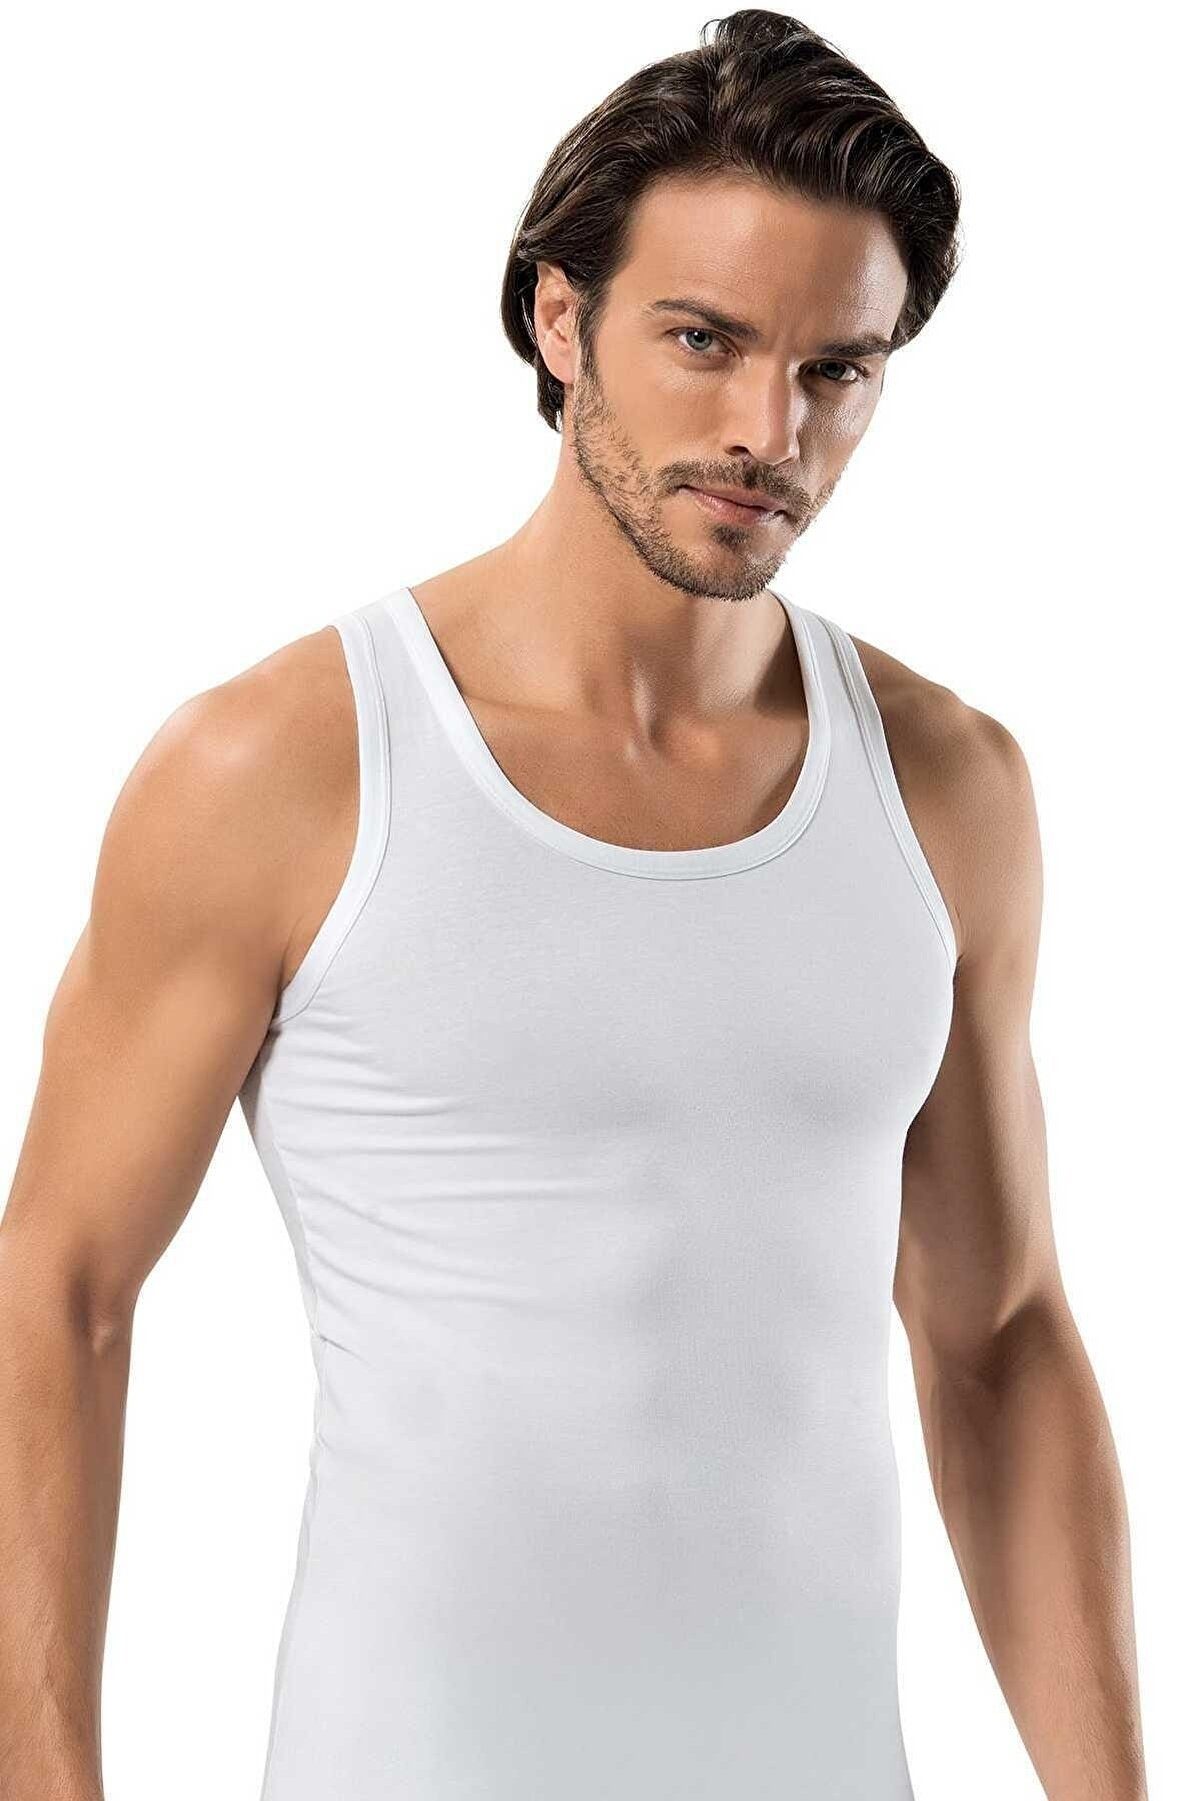 Selef Creation Unterhemd Unterhemd Tank Top 100% Baumwolle (6er Set) Weiß